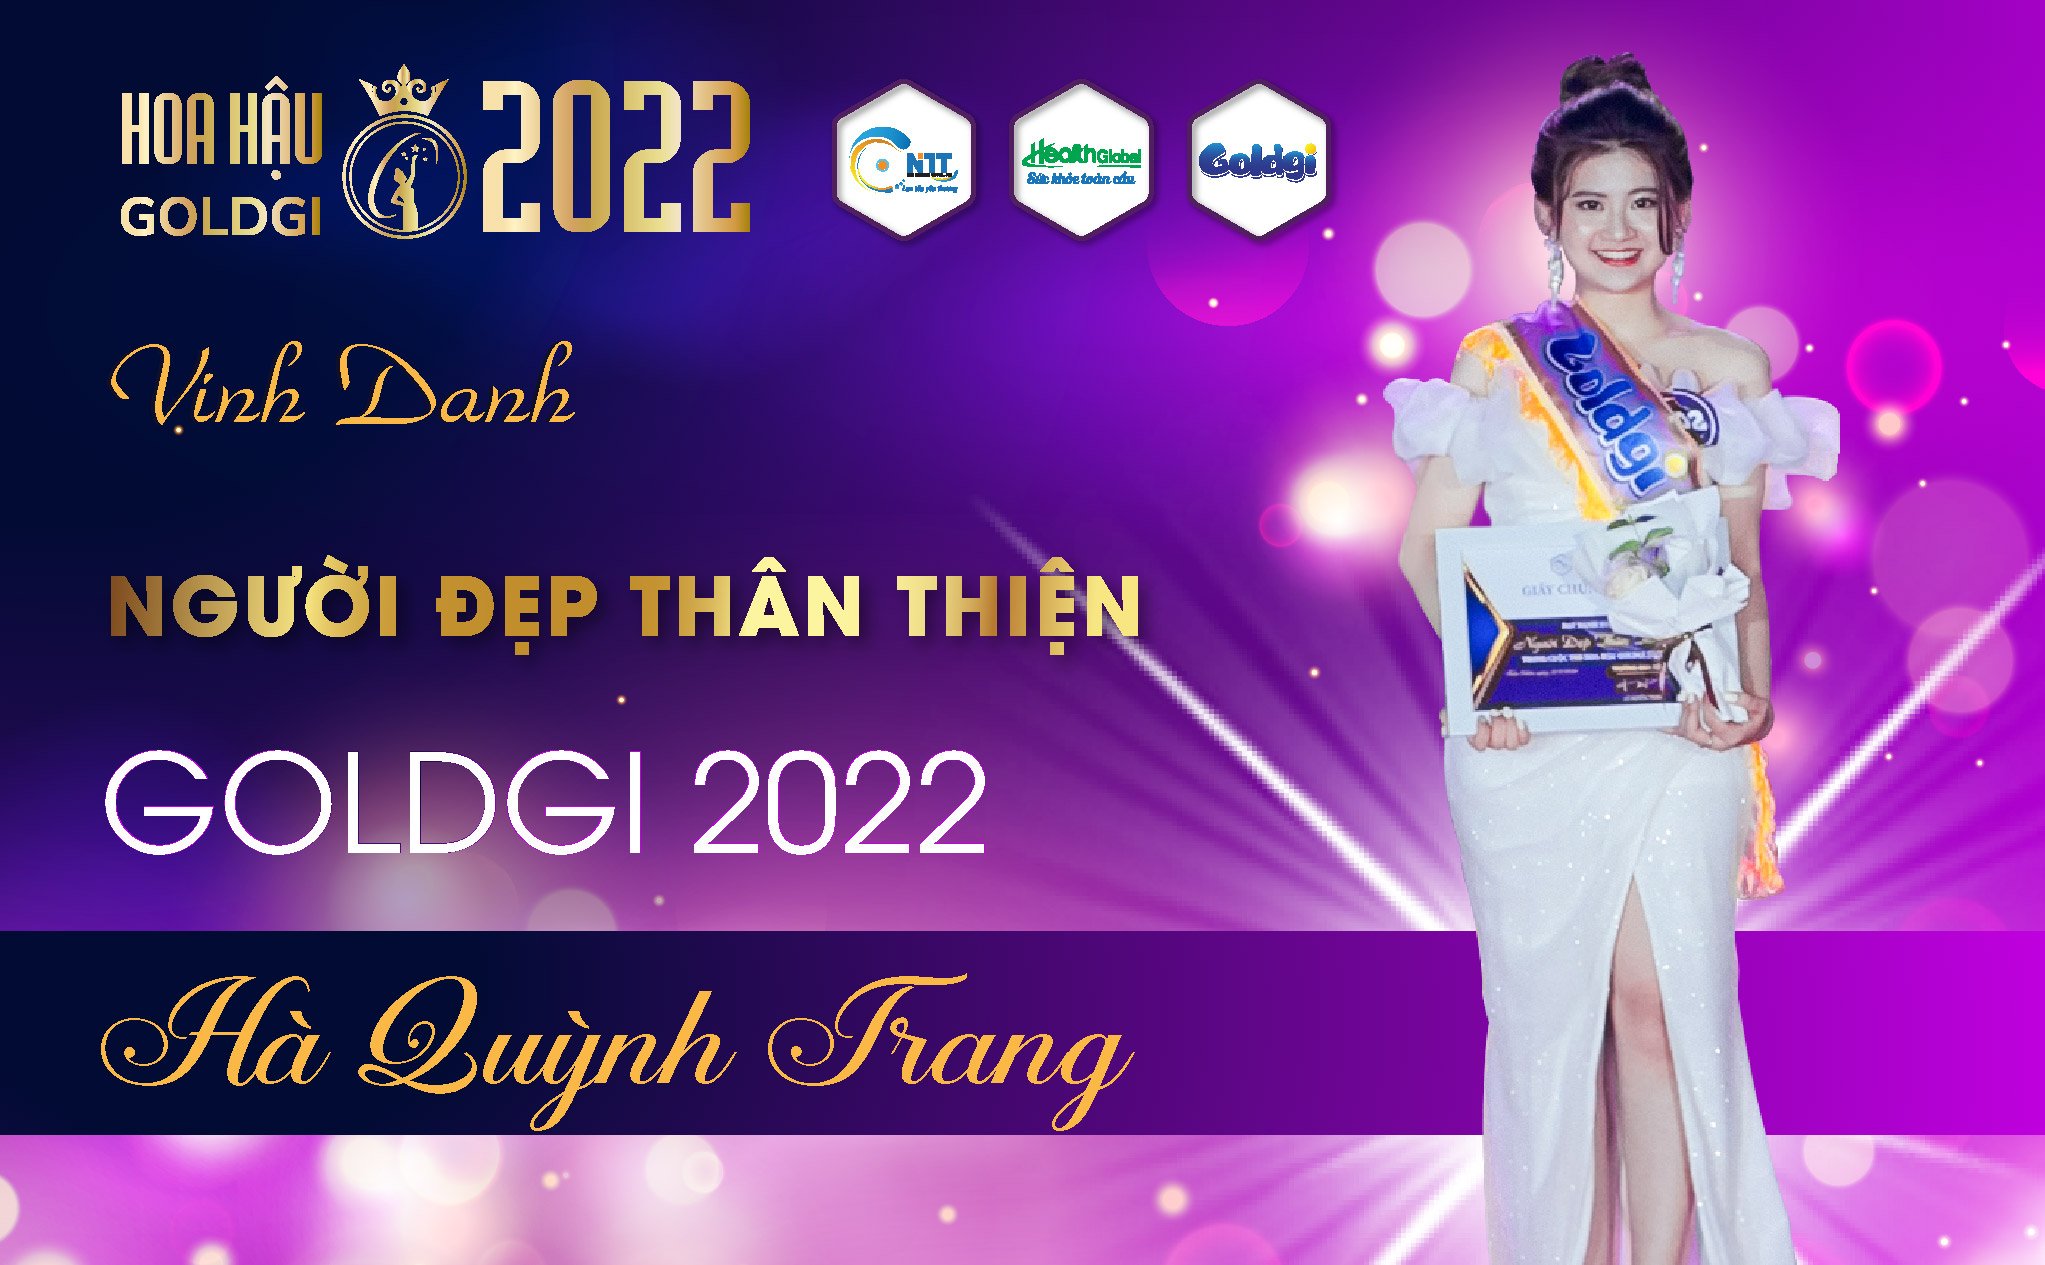 Người đẹp thân thiện Cuộc thi Hoa hậu Goldgi 2022 gọi tên SBD 002 Hà Quỳnh Trang